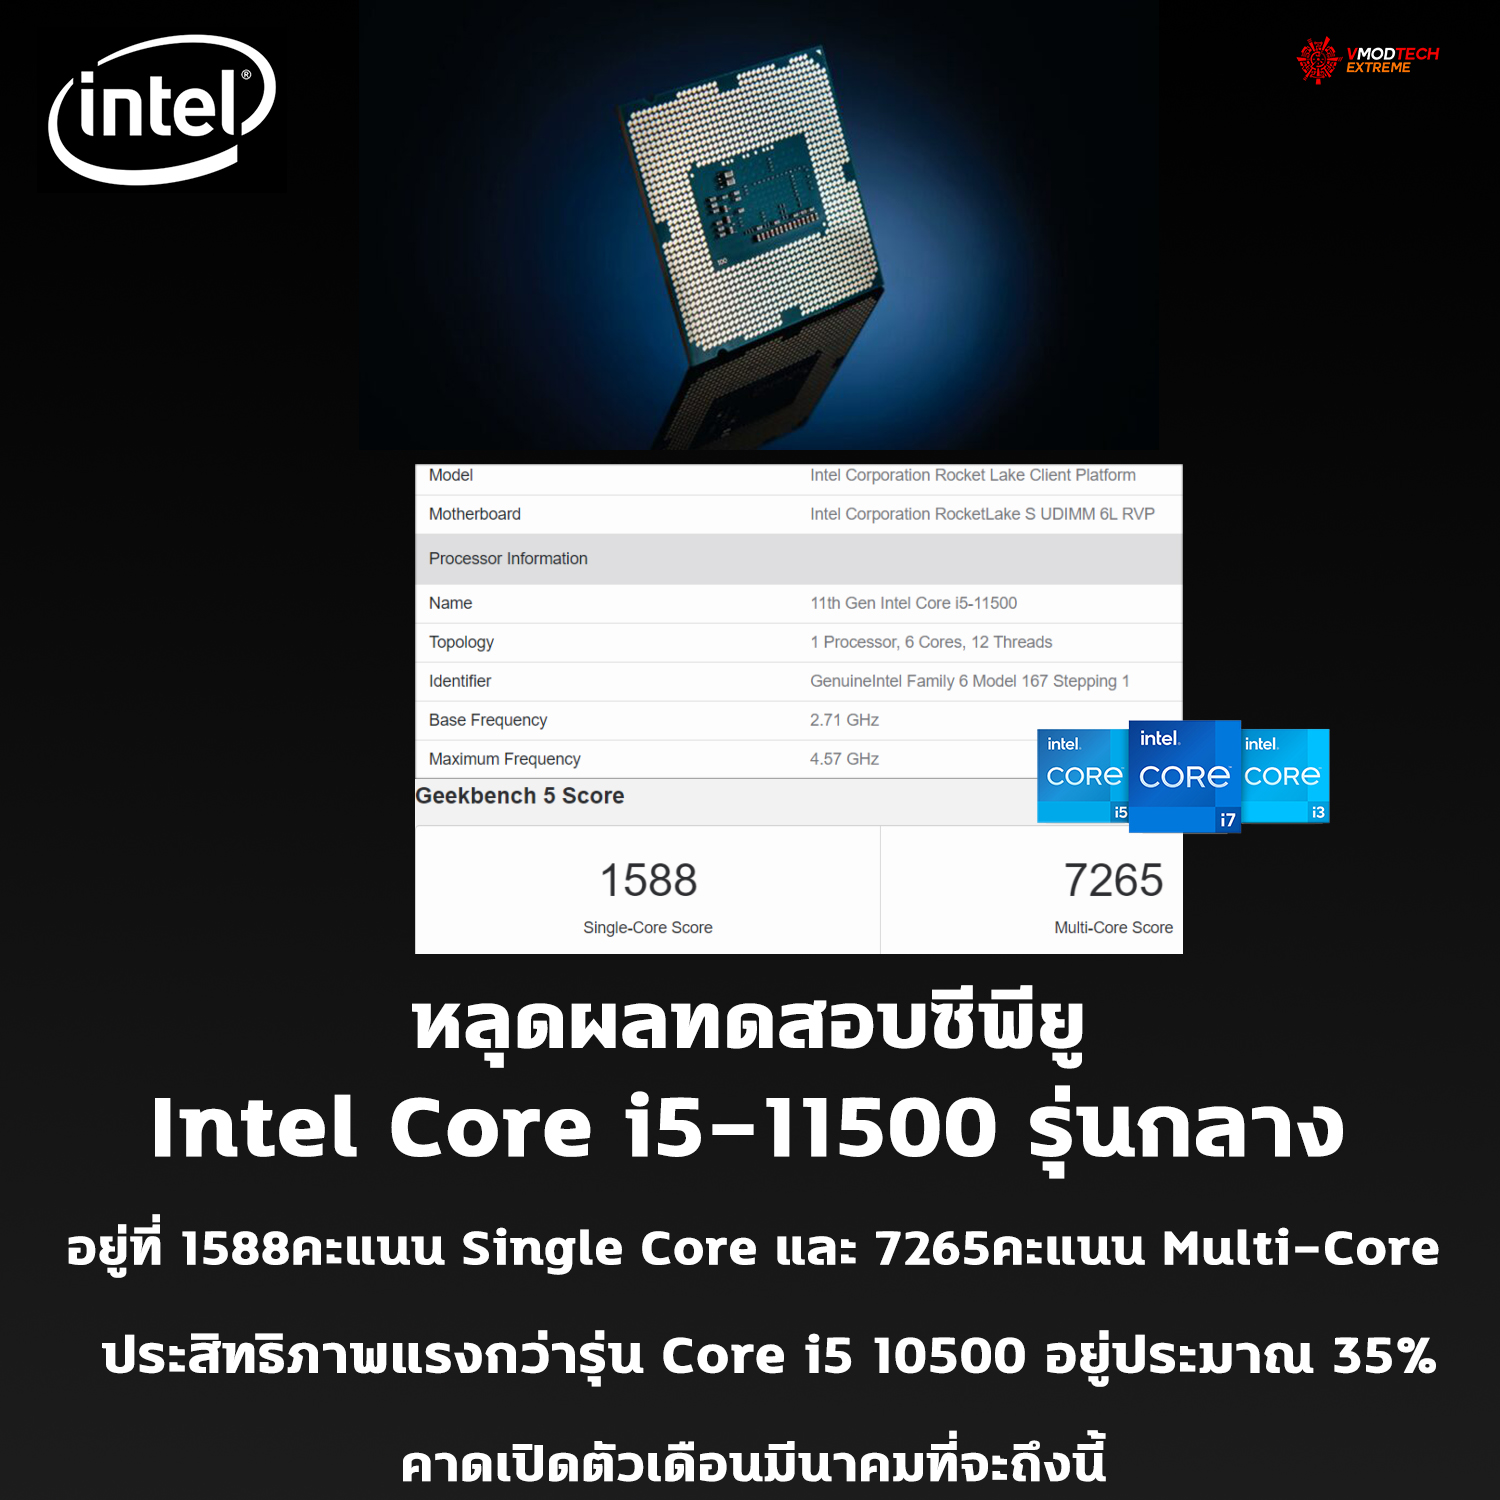 หลุดผลทดสอบซีพียู Intel Core i5-11500 อย่างไม่เป็นทางการ